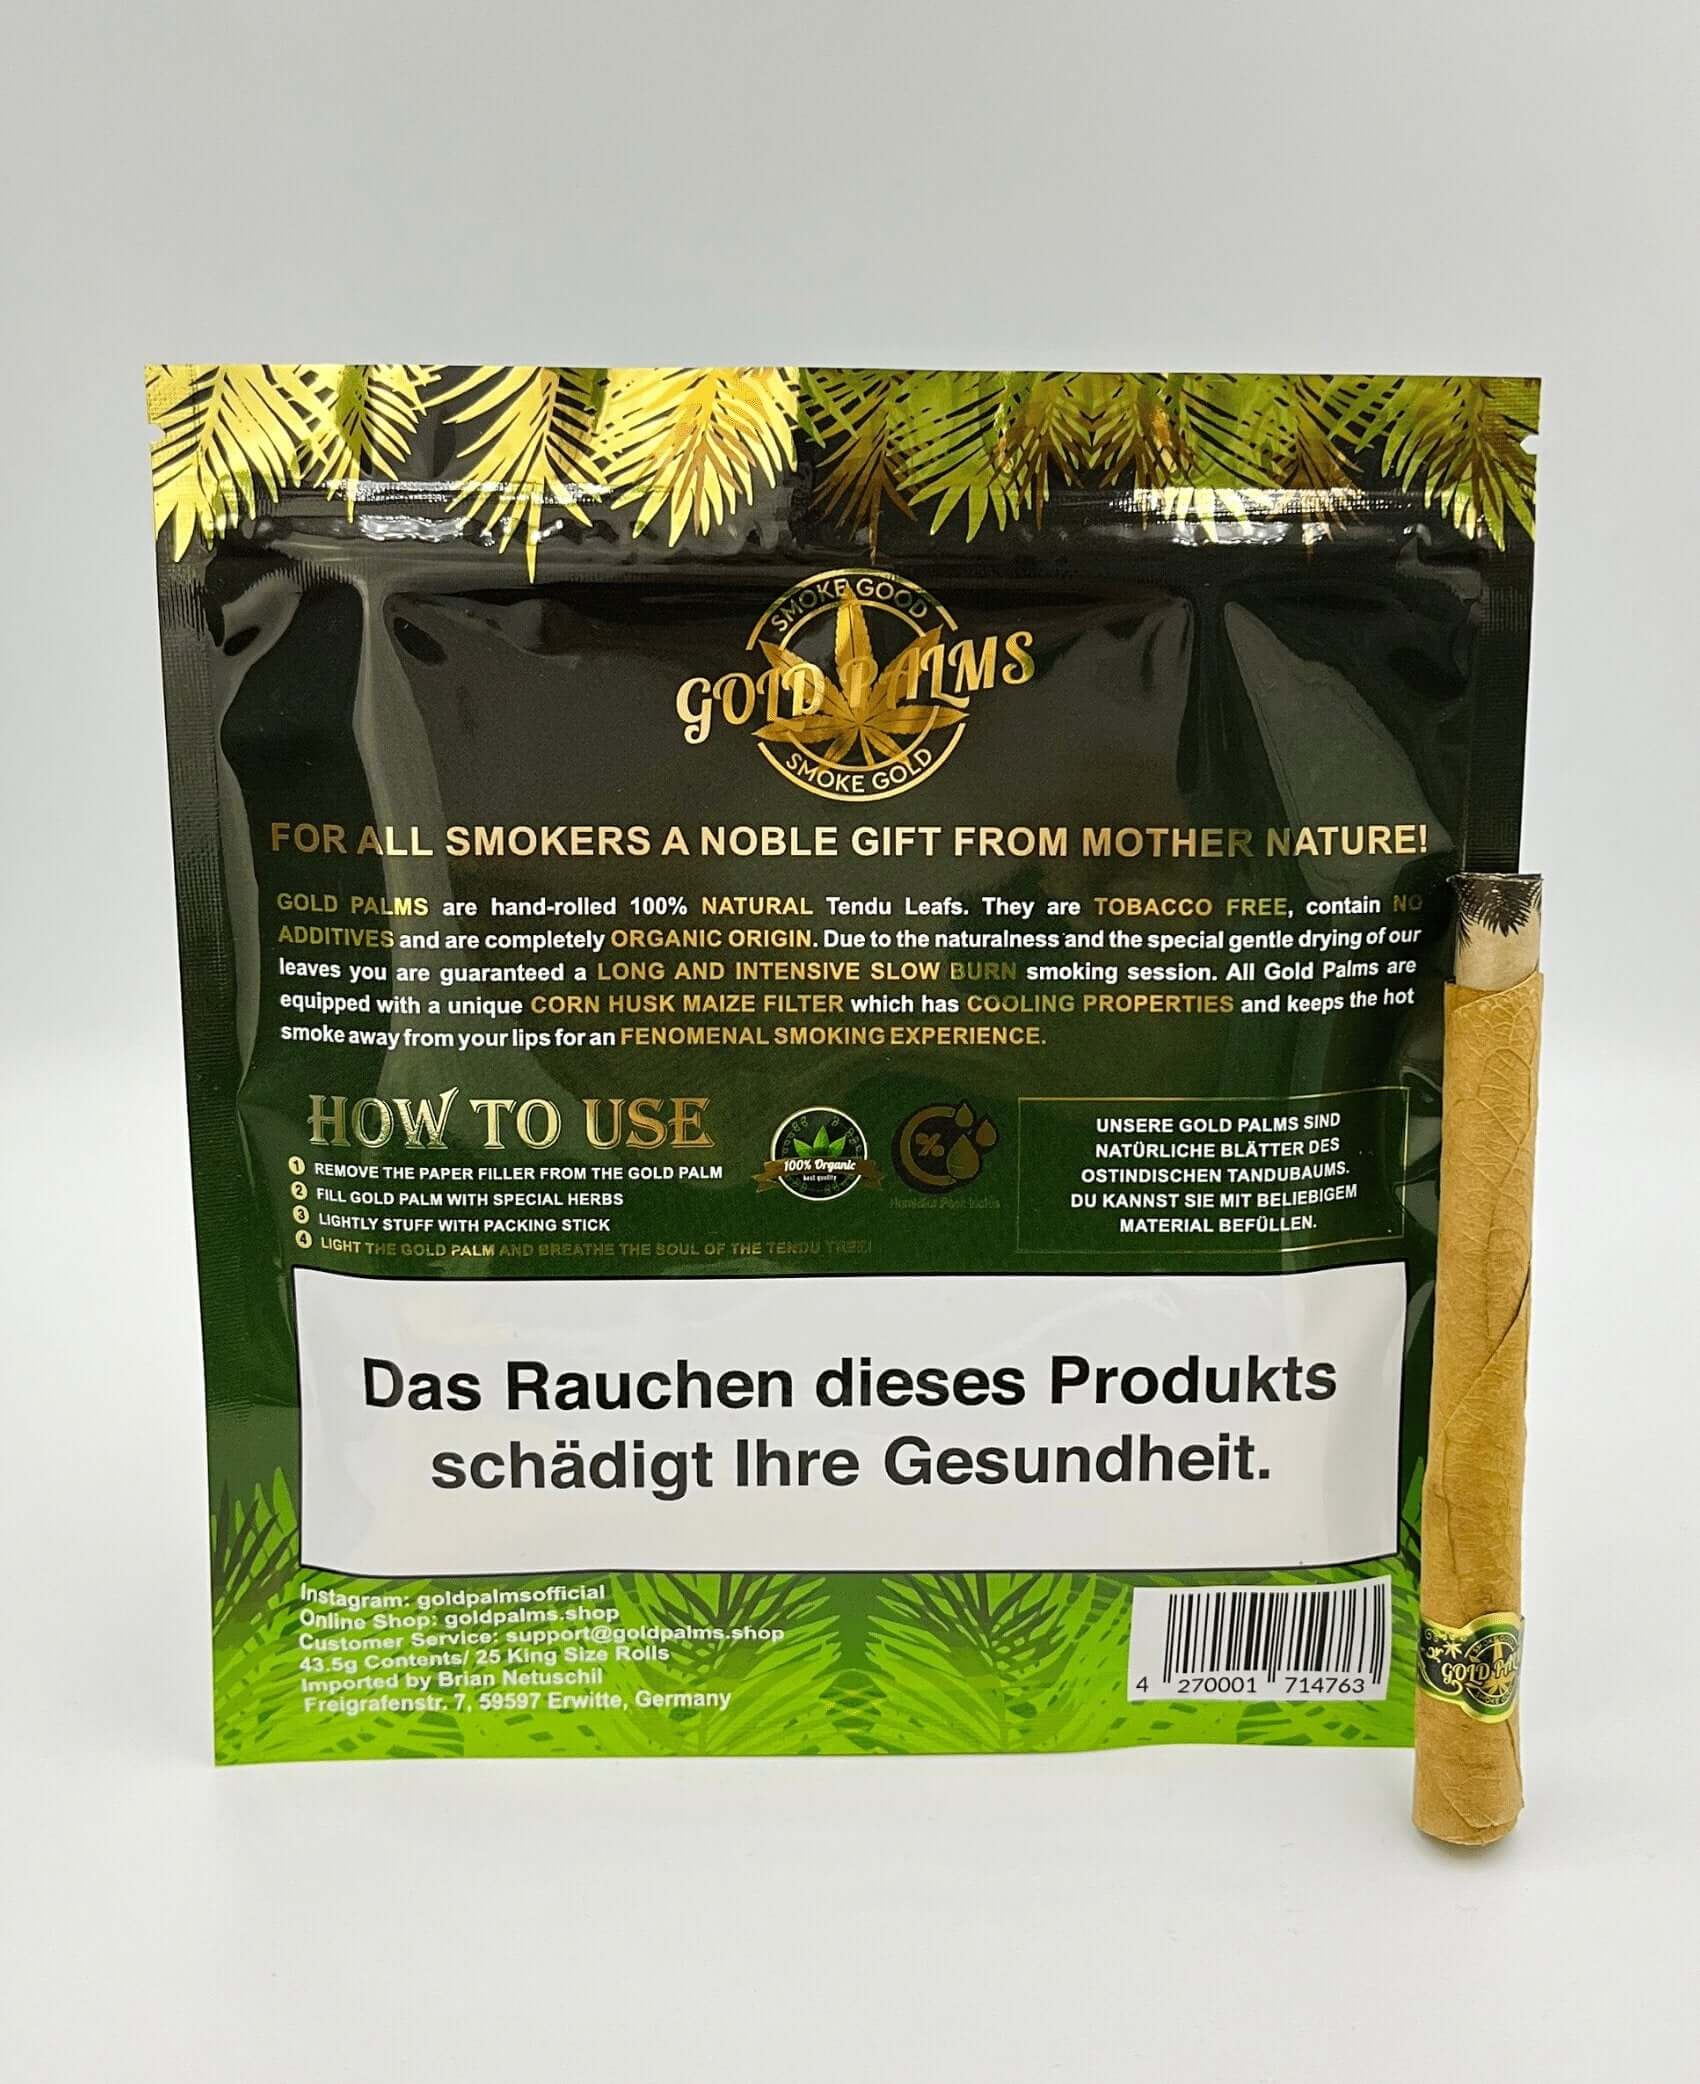 Innovativer Corn Husk Filter von Gold Palms, integriert in Blunt Wraps für eine glattere Raucherfahrung